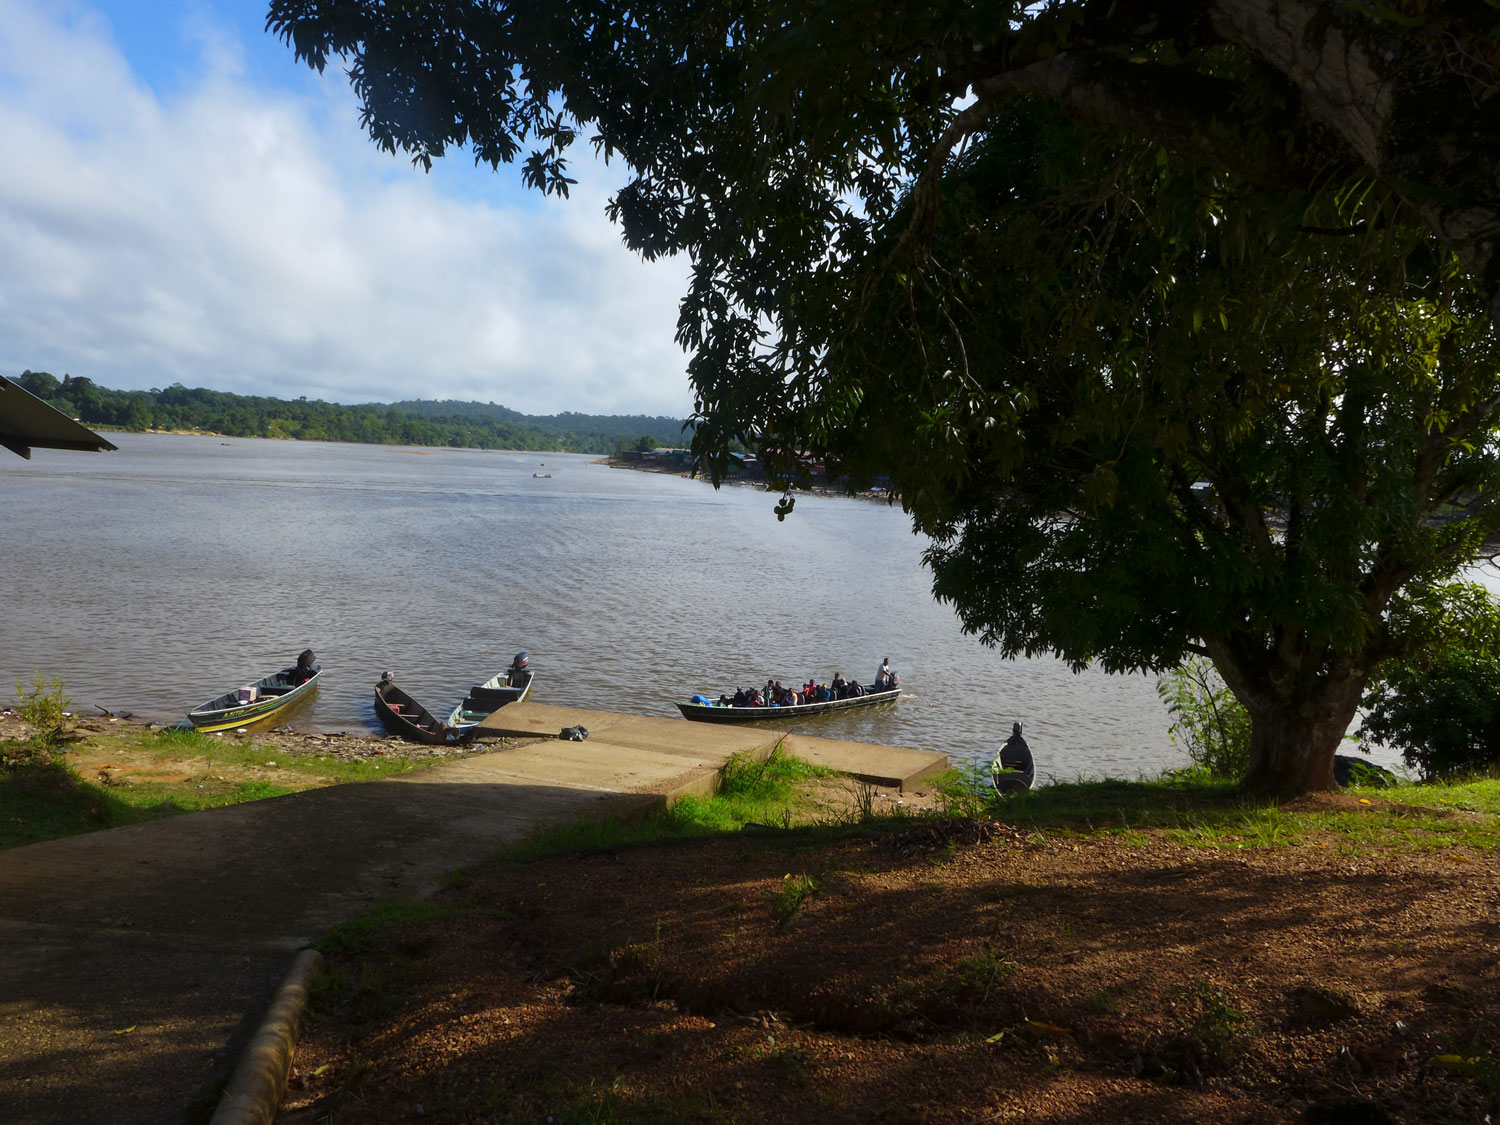 Les Wayanas ont leur propre embarcadère : le club Kayak. C’est ici qu’on vient chercher un transport pour « monter dans le sud » : une expression qui signifie qu’on veut se rendre dans les villages amérindiens au sud de Maripasoula.